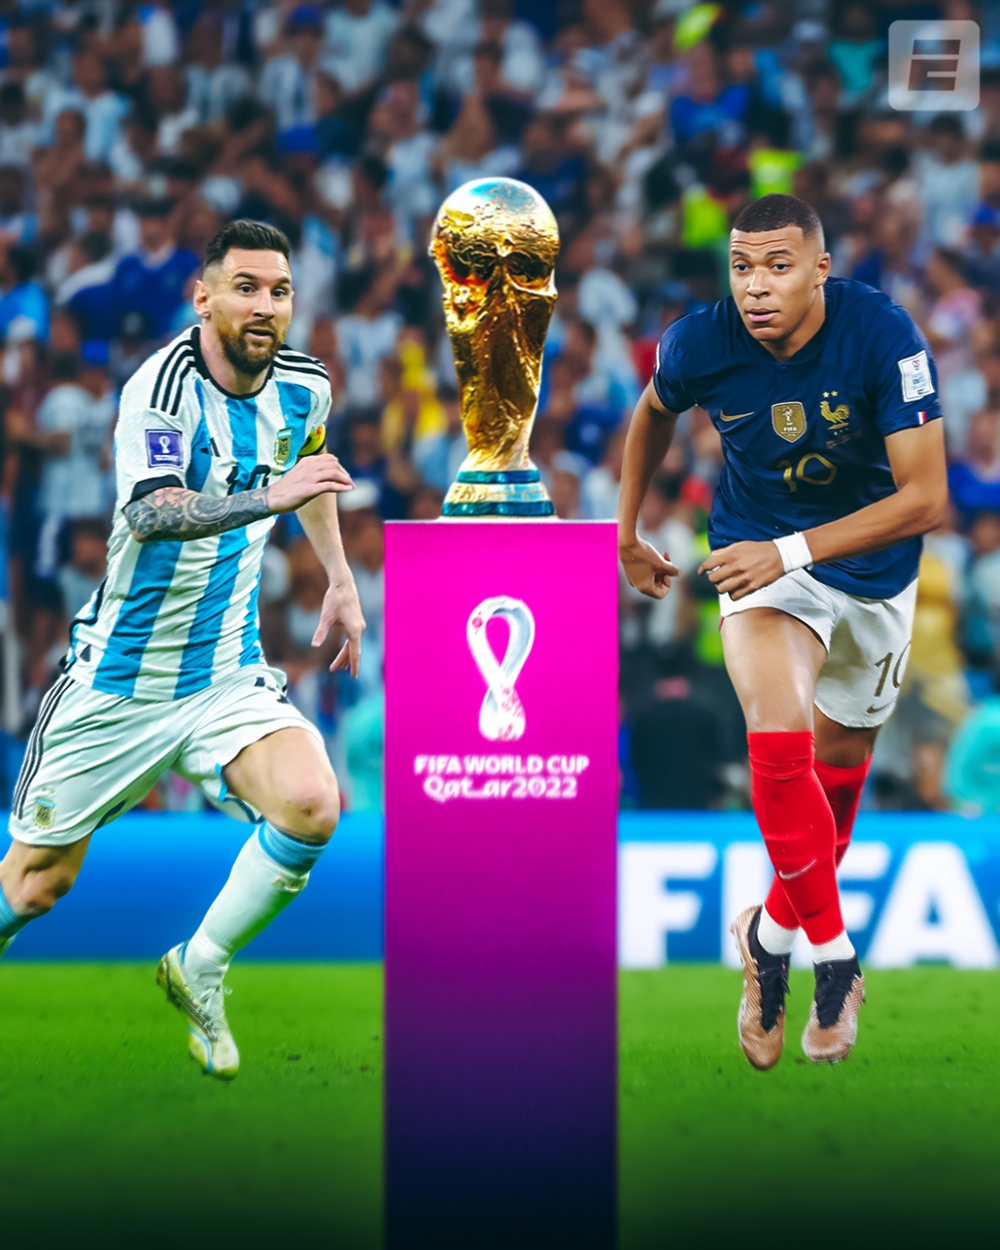 Bạn muốn biết ai sẽ nắm giữ cúp vàng World Cup 2022? Xem hình ảnh Messi và Mbappe đấu trí tranh cúp để tìm hiểu thêm về đội bóng chiến thắng.